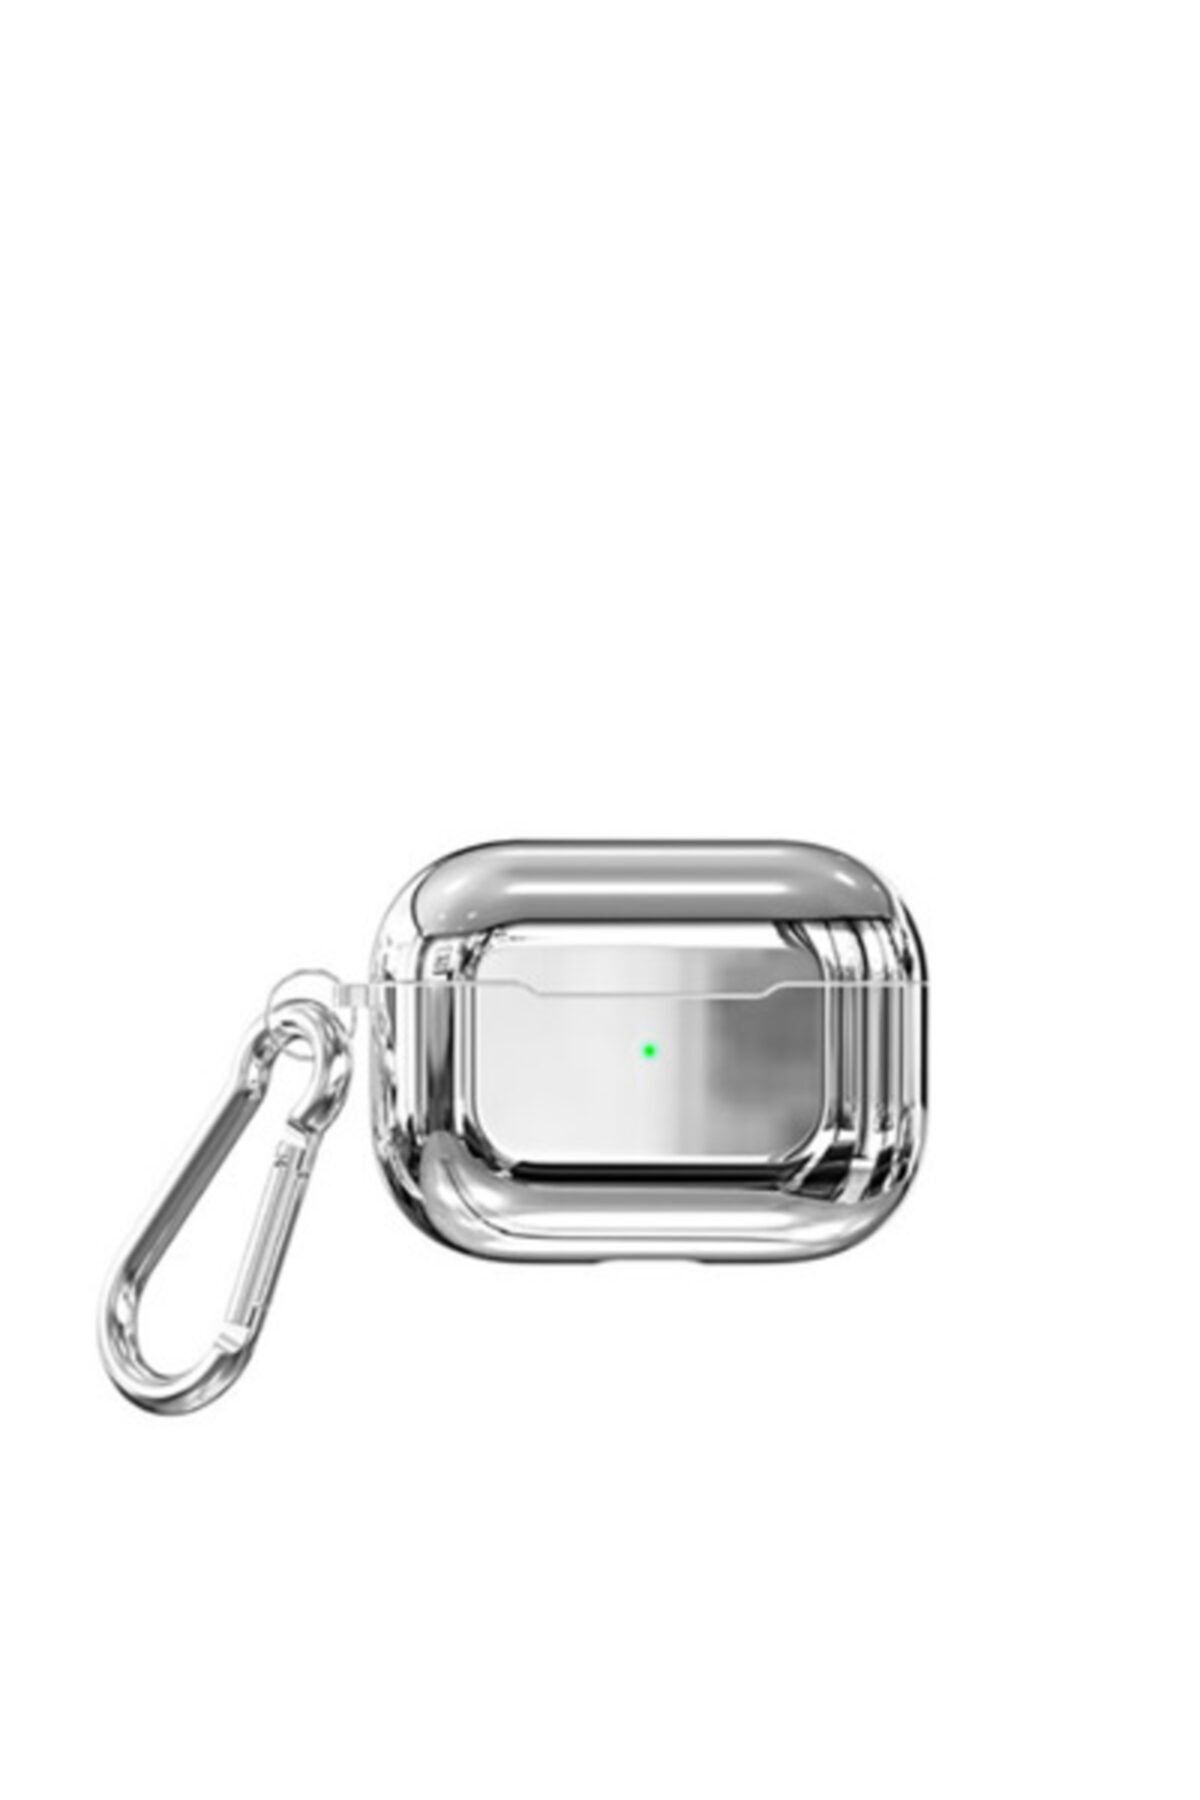 Pickcase Apple Airpods Pro Kılıf Airbag 06 Silikon Gümüş